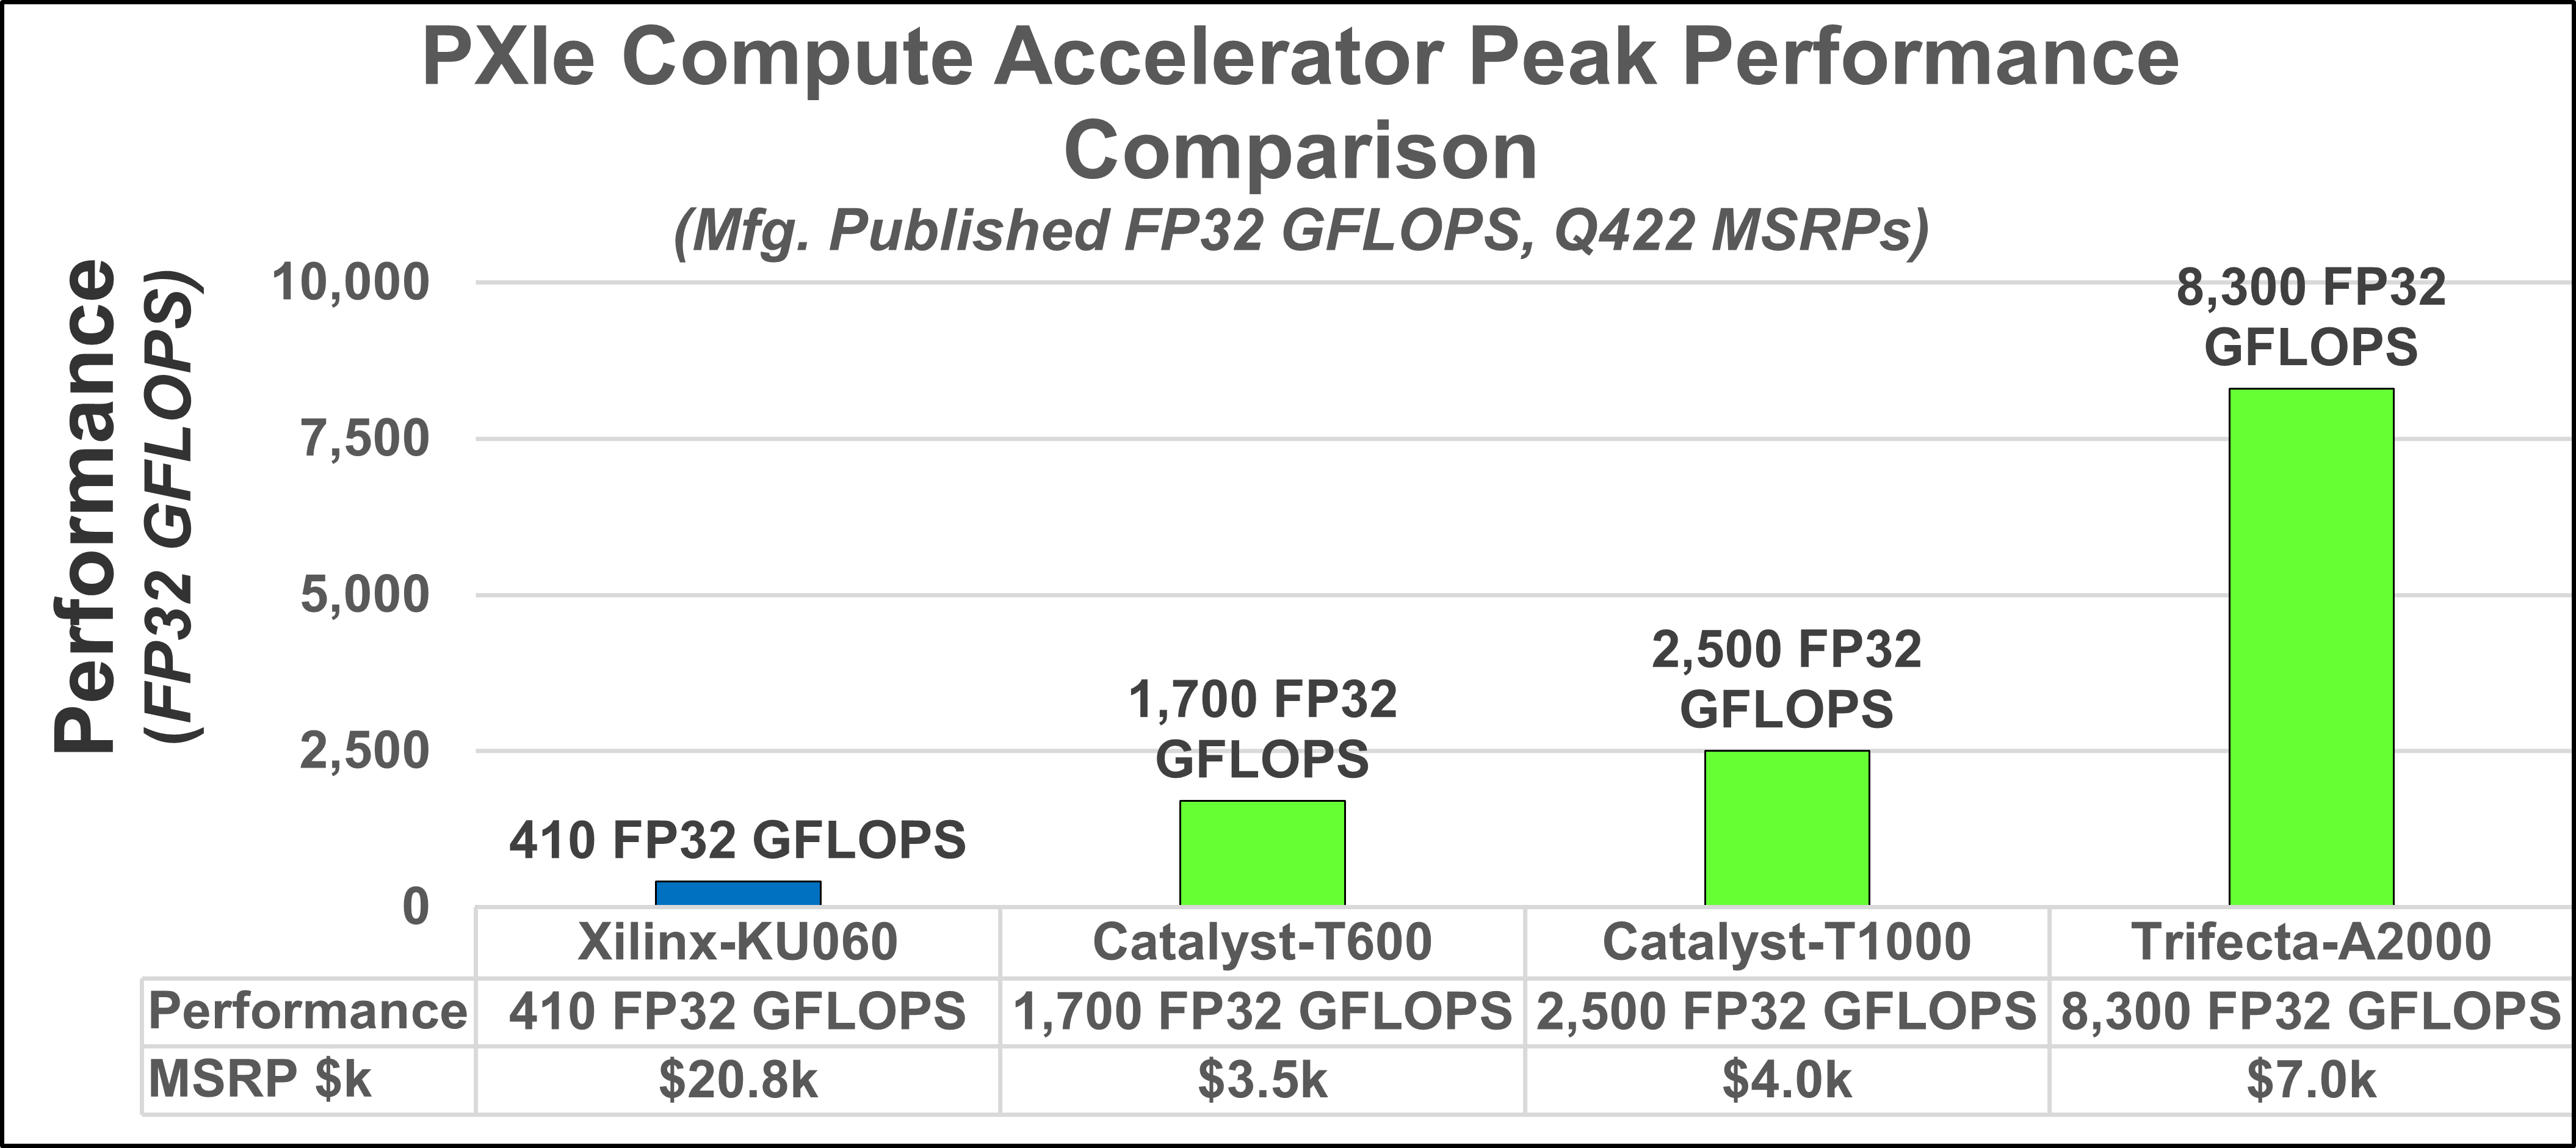 COTS PXIe Compute Accelerator Performance Comparison